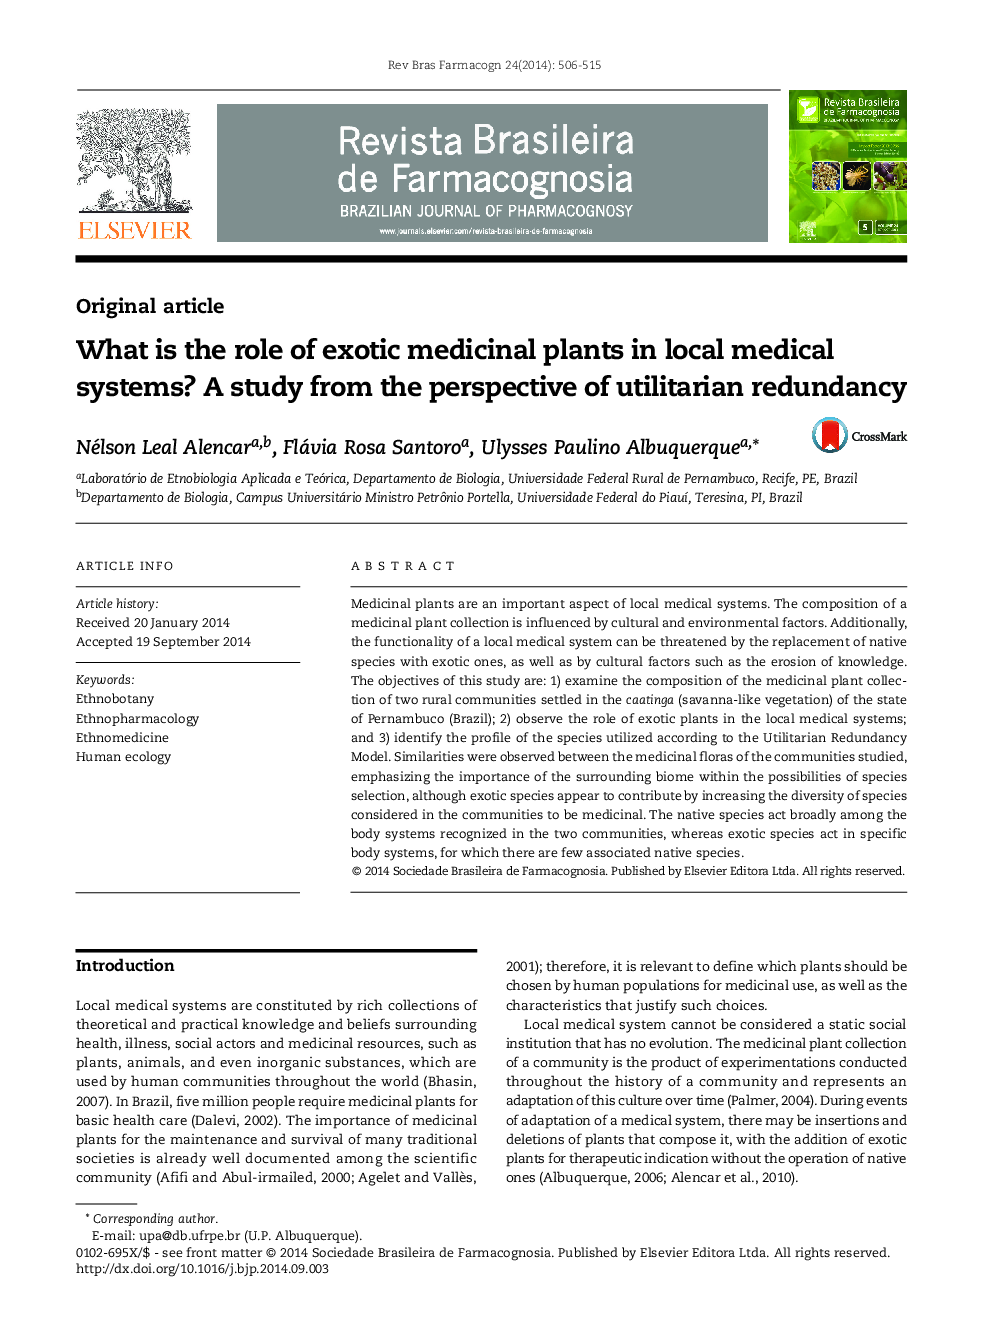 نقش گیاهان دارویی عجیب و غریب در سیستم های پزشکی محلی چیست؟ یک مطالعه از دیدگاه افزونگی بهره برداران 